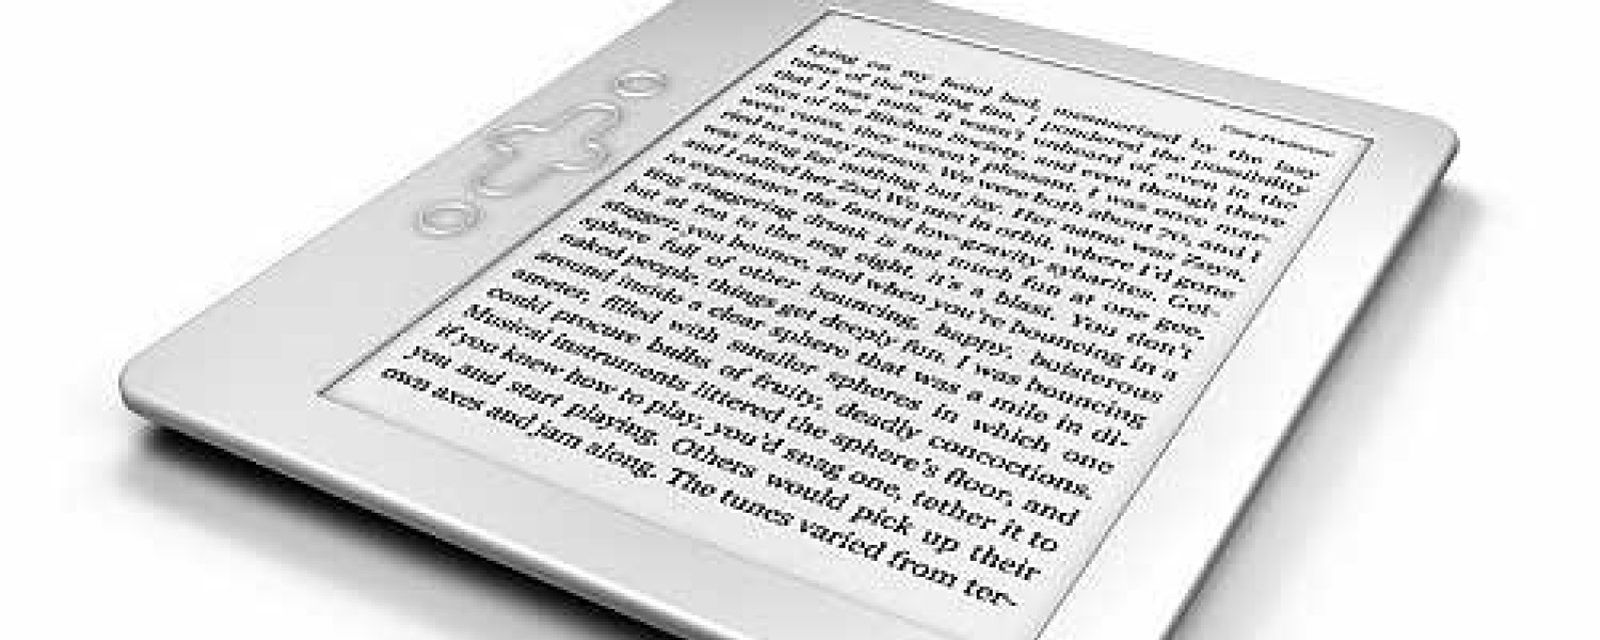 Foto: El ocaso de los libros en papel: el 'ebook' se impone